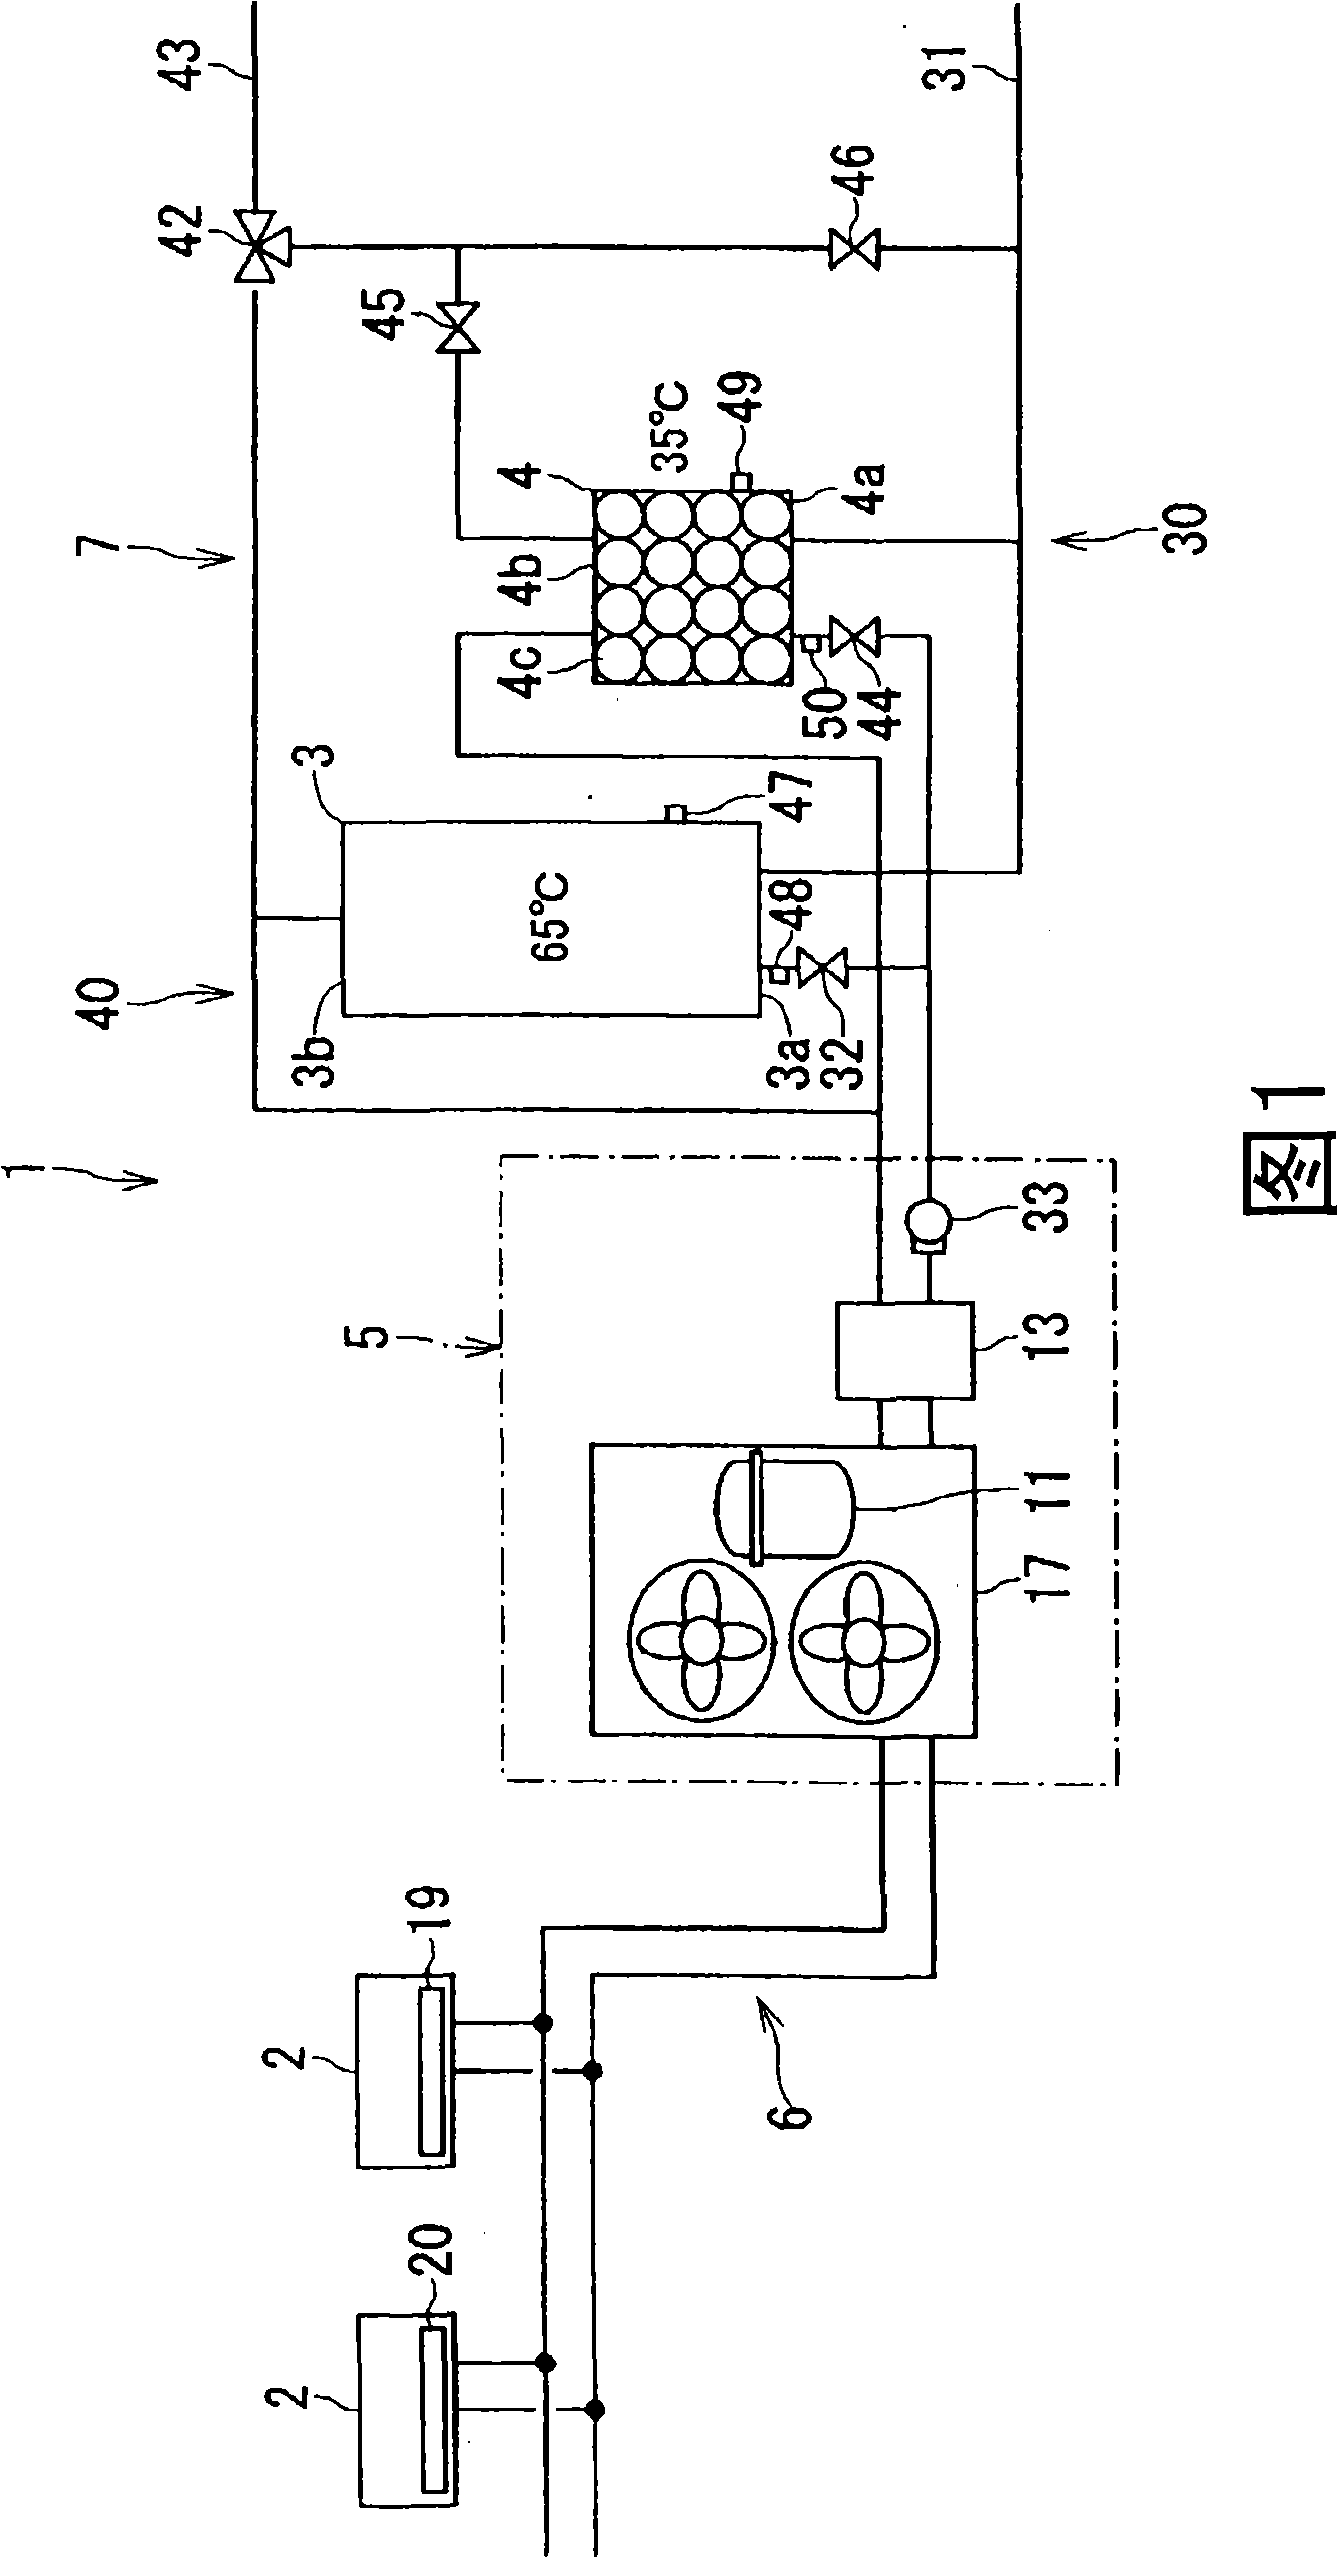 Heat pump air conditioning water supply machine